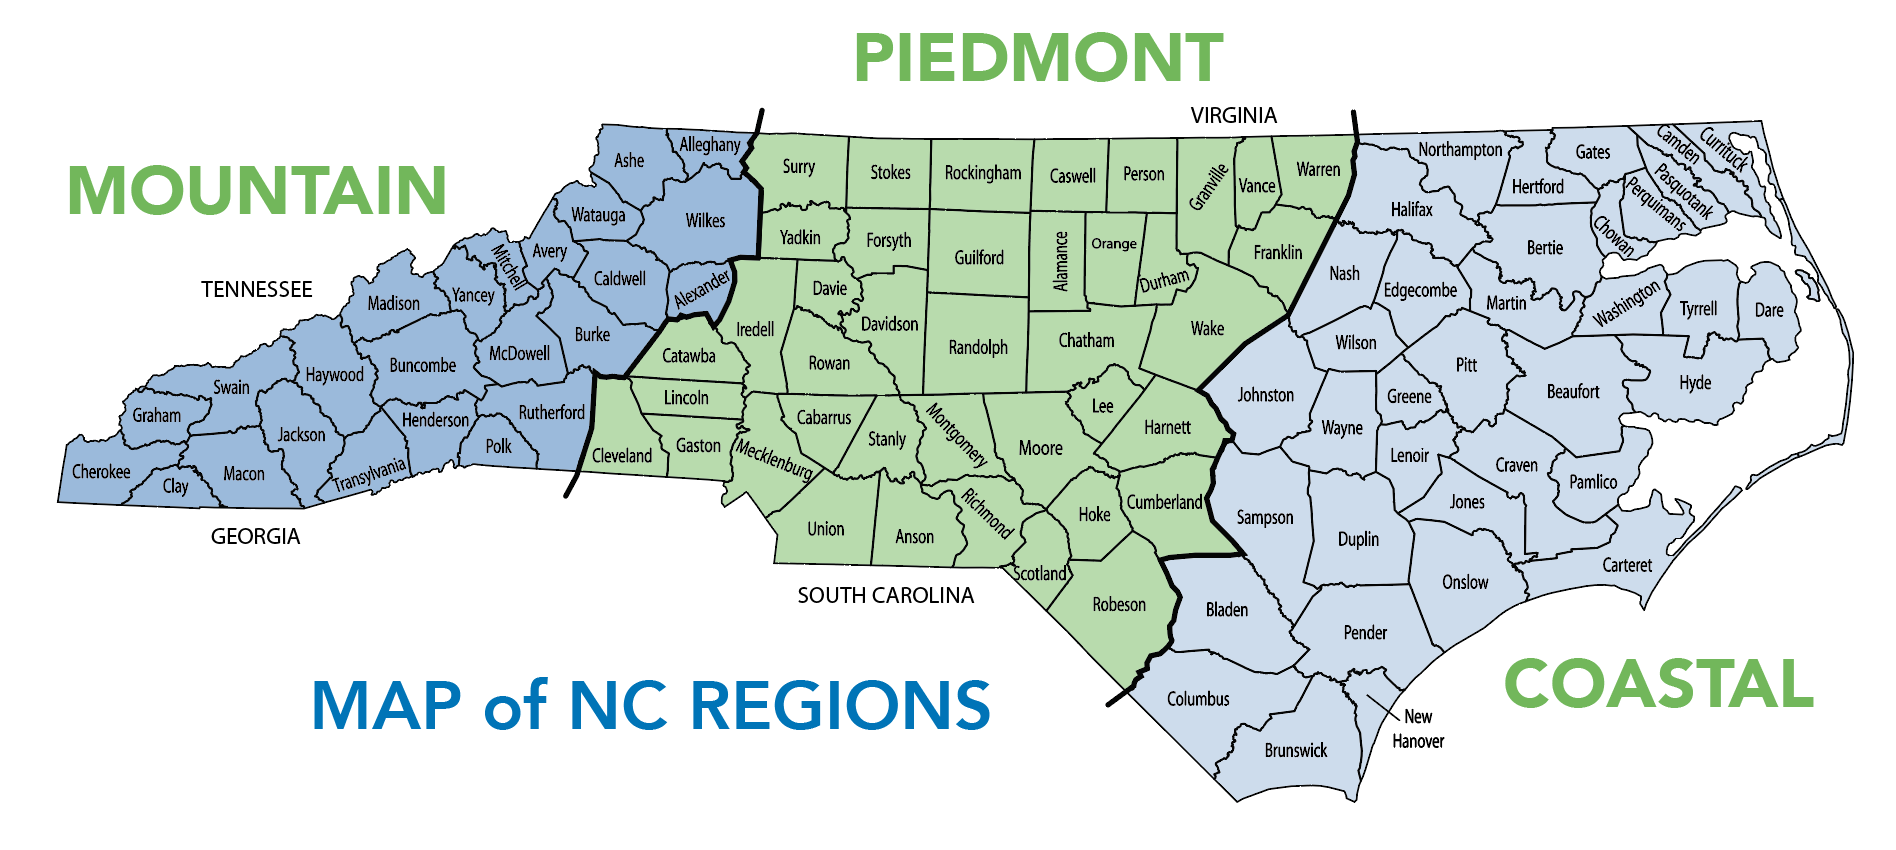 NC Region Map